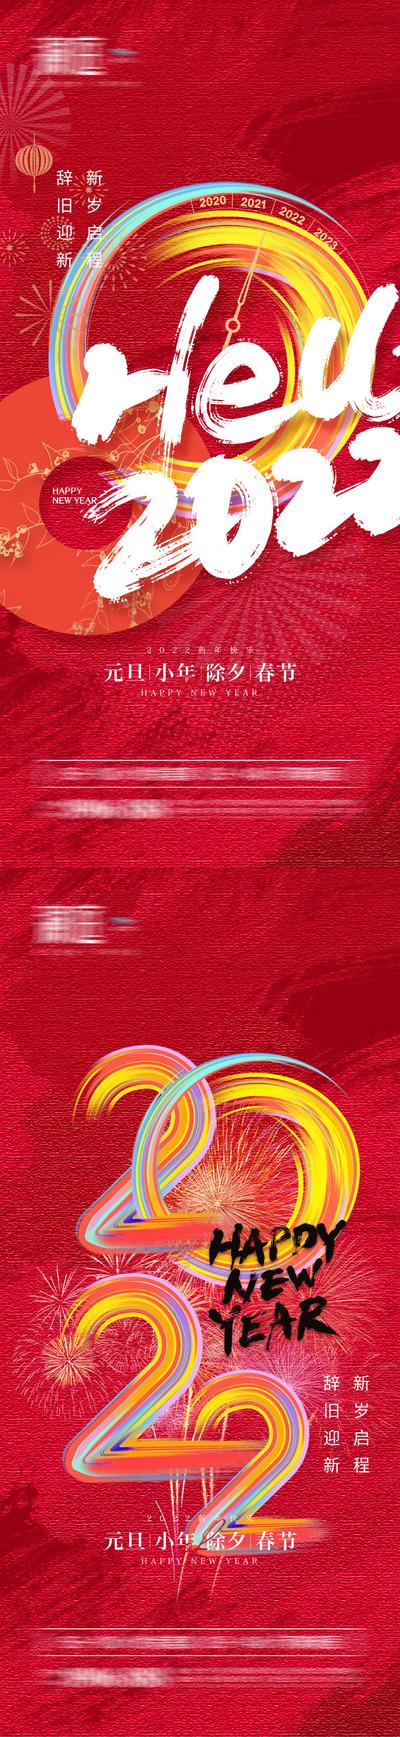 南门网 海报 房地产 中国传统节日 元旦 新年 缤纷 书法字 系列